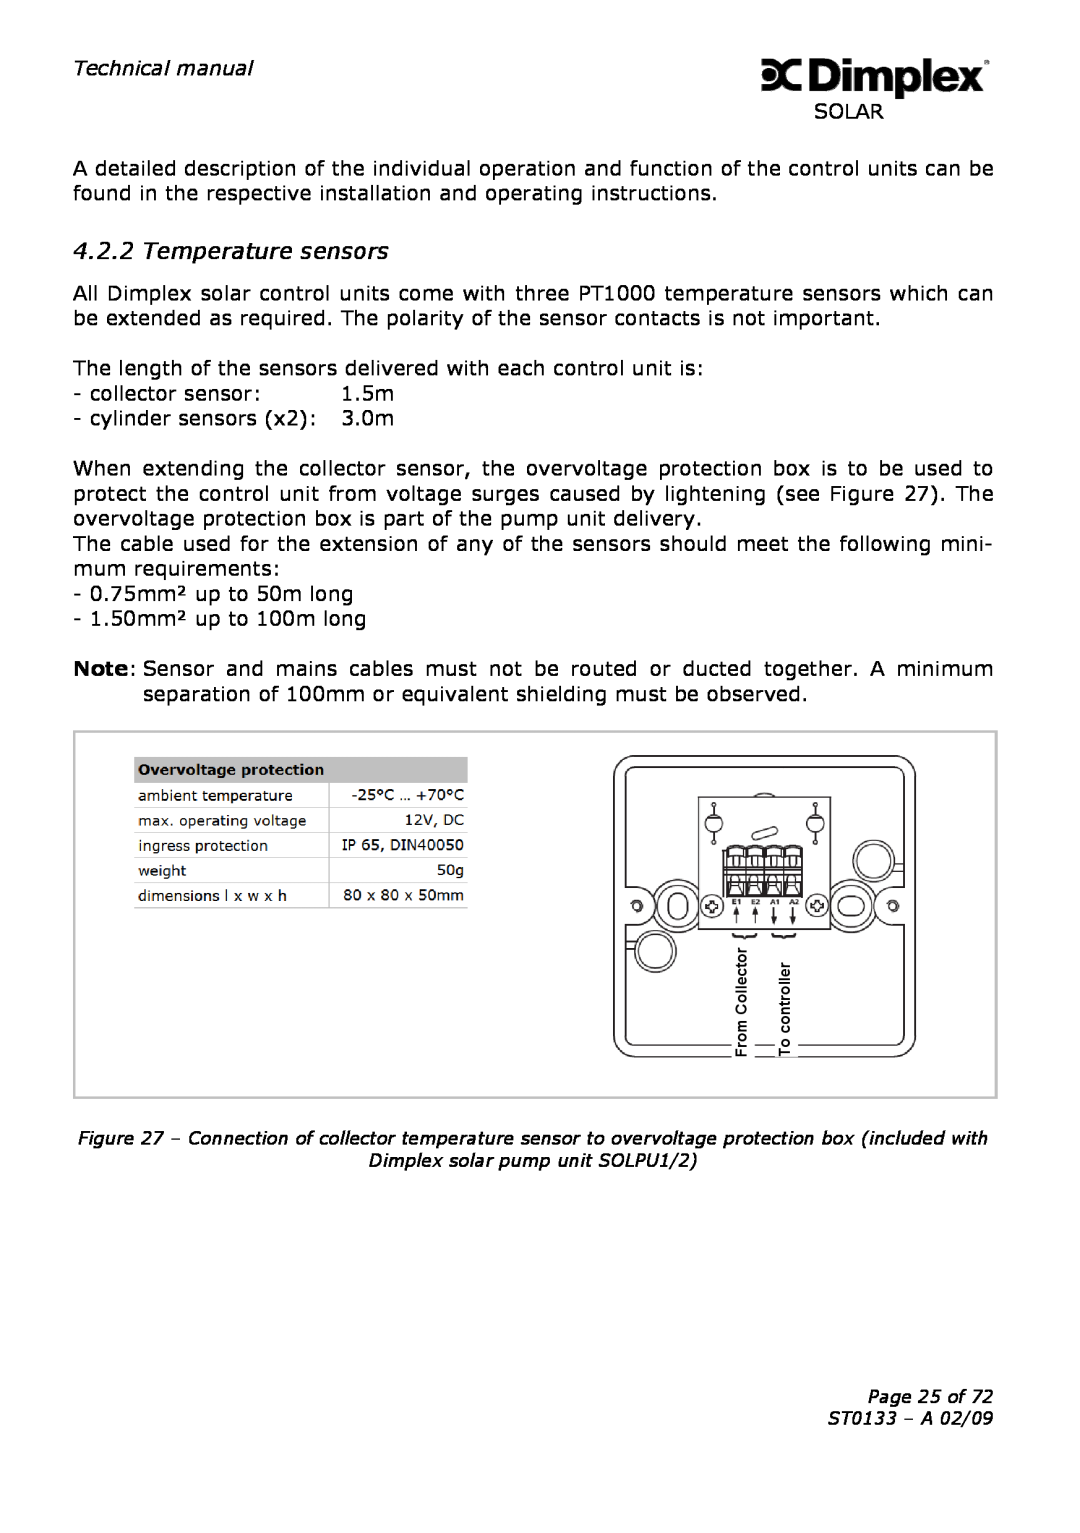 Dimplex technical manual Temperature sensors, Dimplex solar pump unit SOLPU1/2 Page 25 of ST0133 - A 02/09 